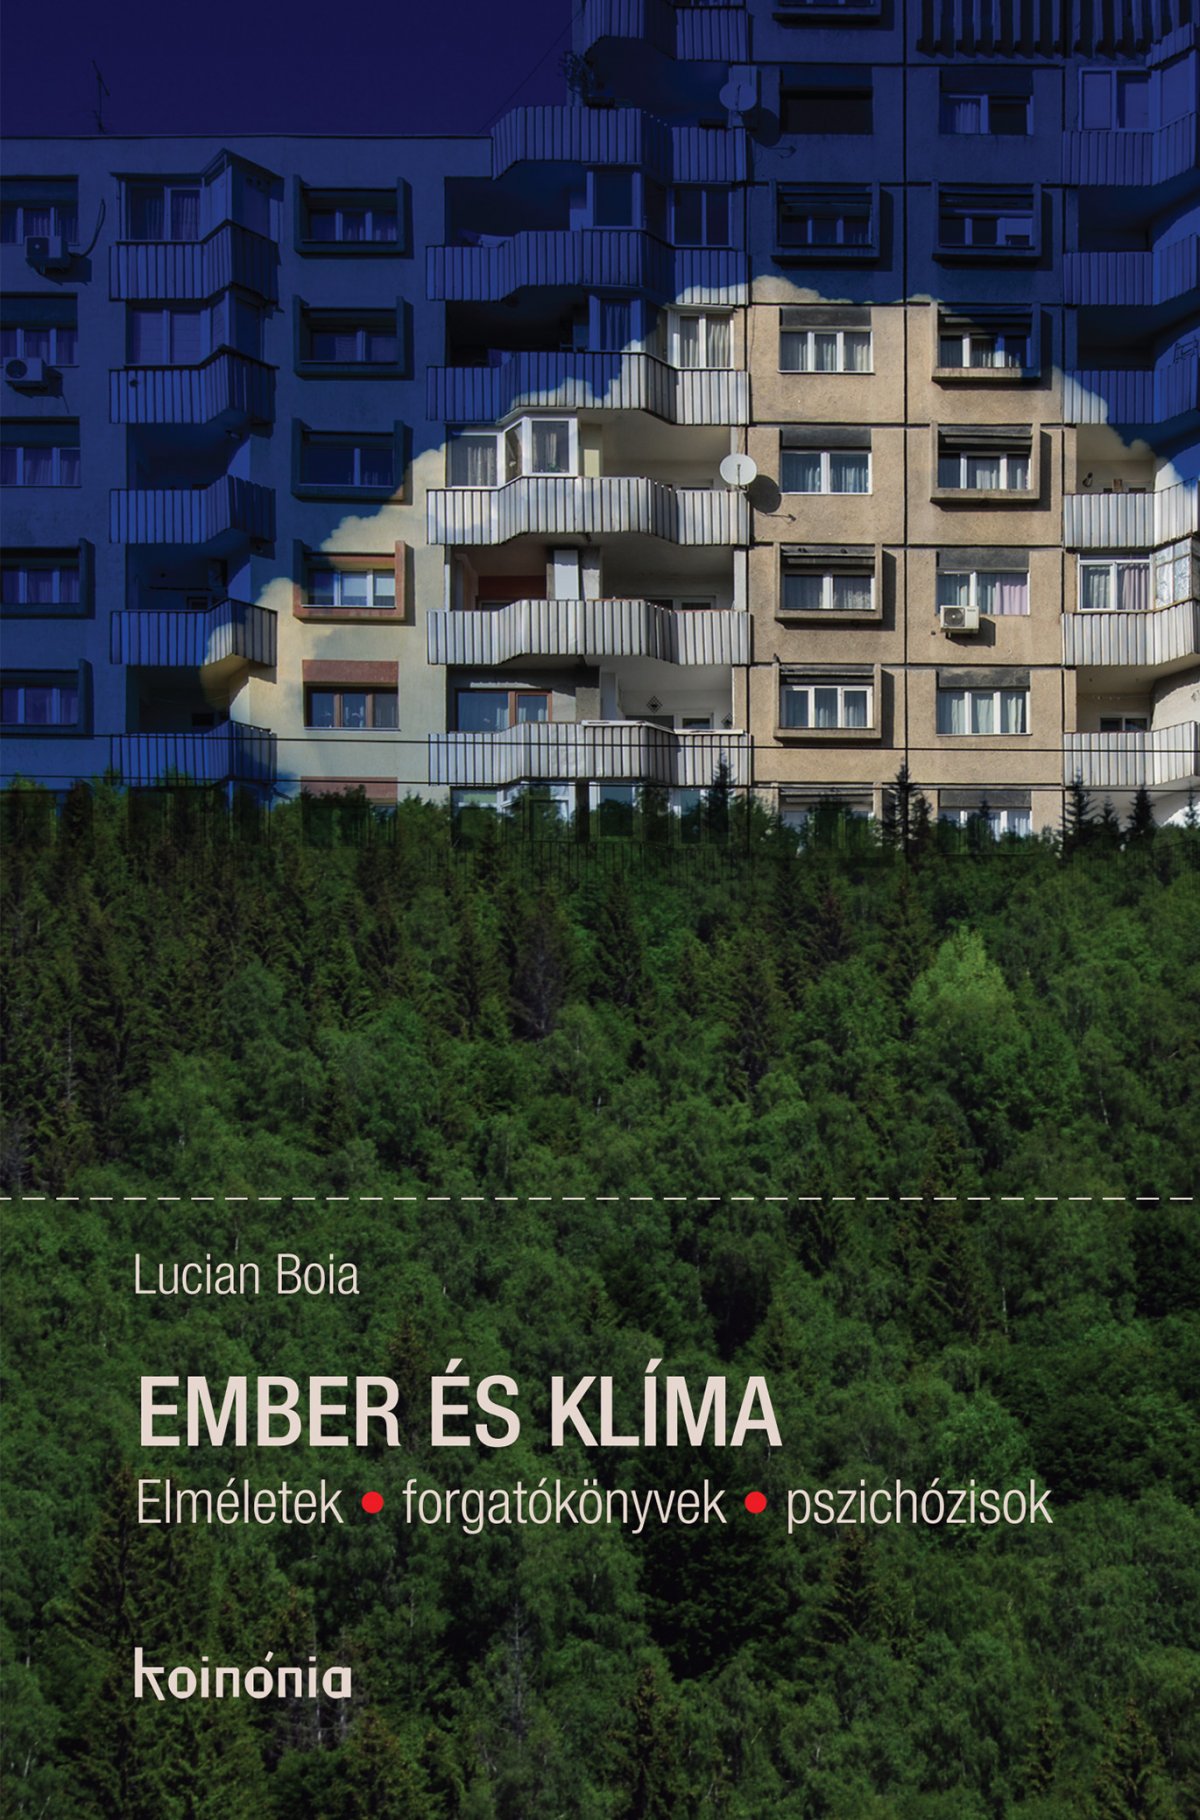 Ember és klíma: Lucian Boia újabb könyve jelent meg magyarul